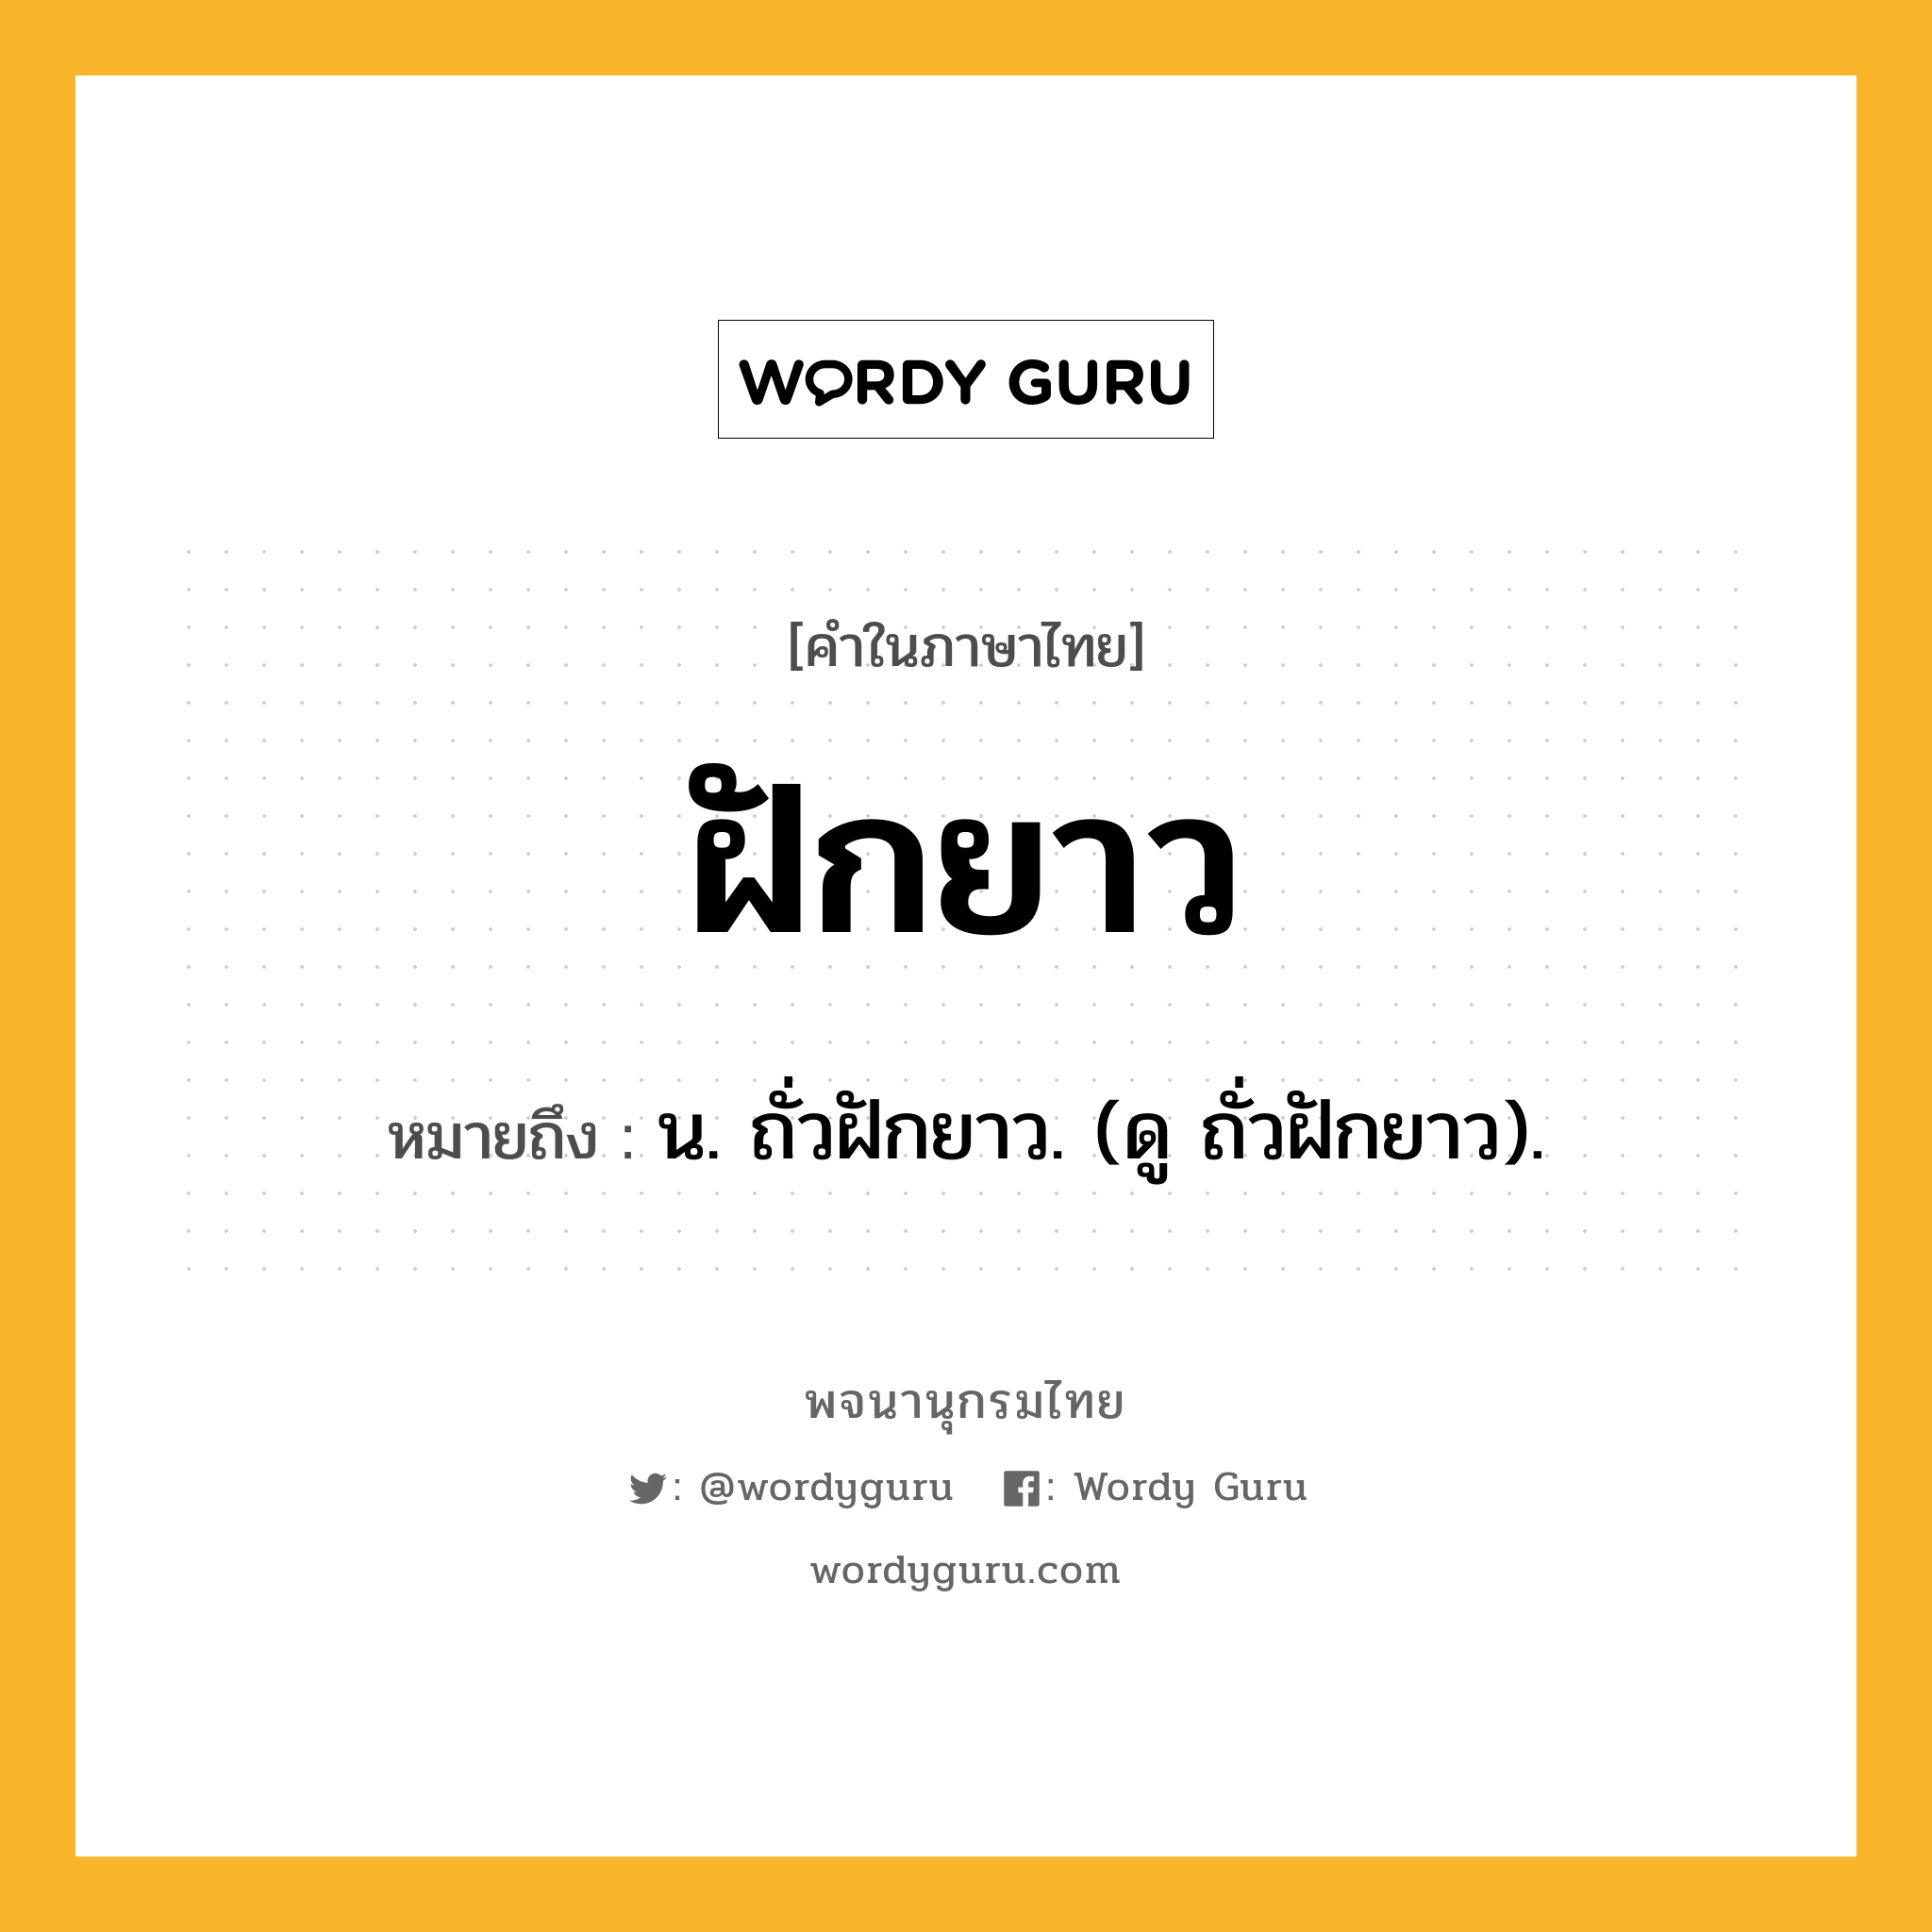 ฝักยาว หมายถึงอะไร?, คำในภาษาไทย ฝักยาว หมายถึง น. ถั่วฝักยาว. (ดู ถั่วฝักยาว).